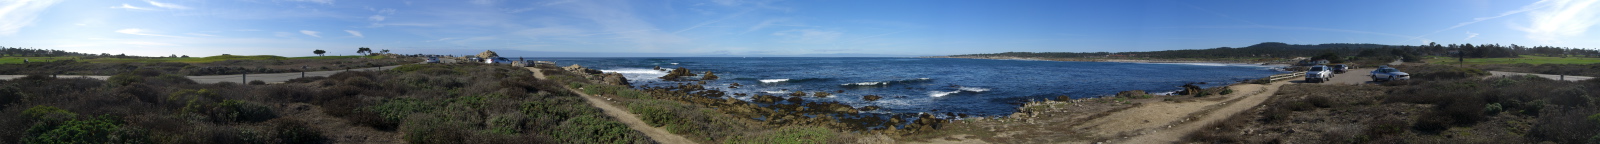 Spanish Bay Panorama